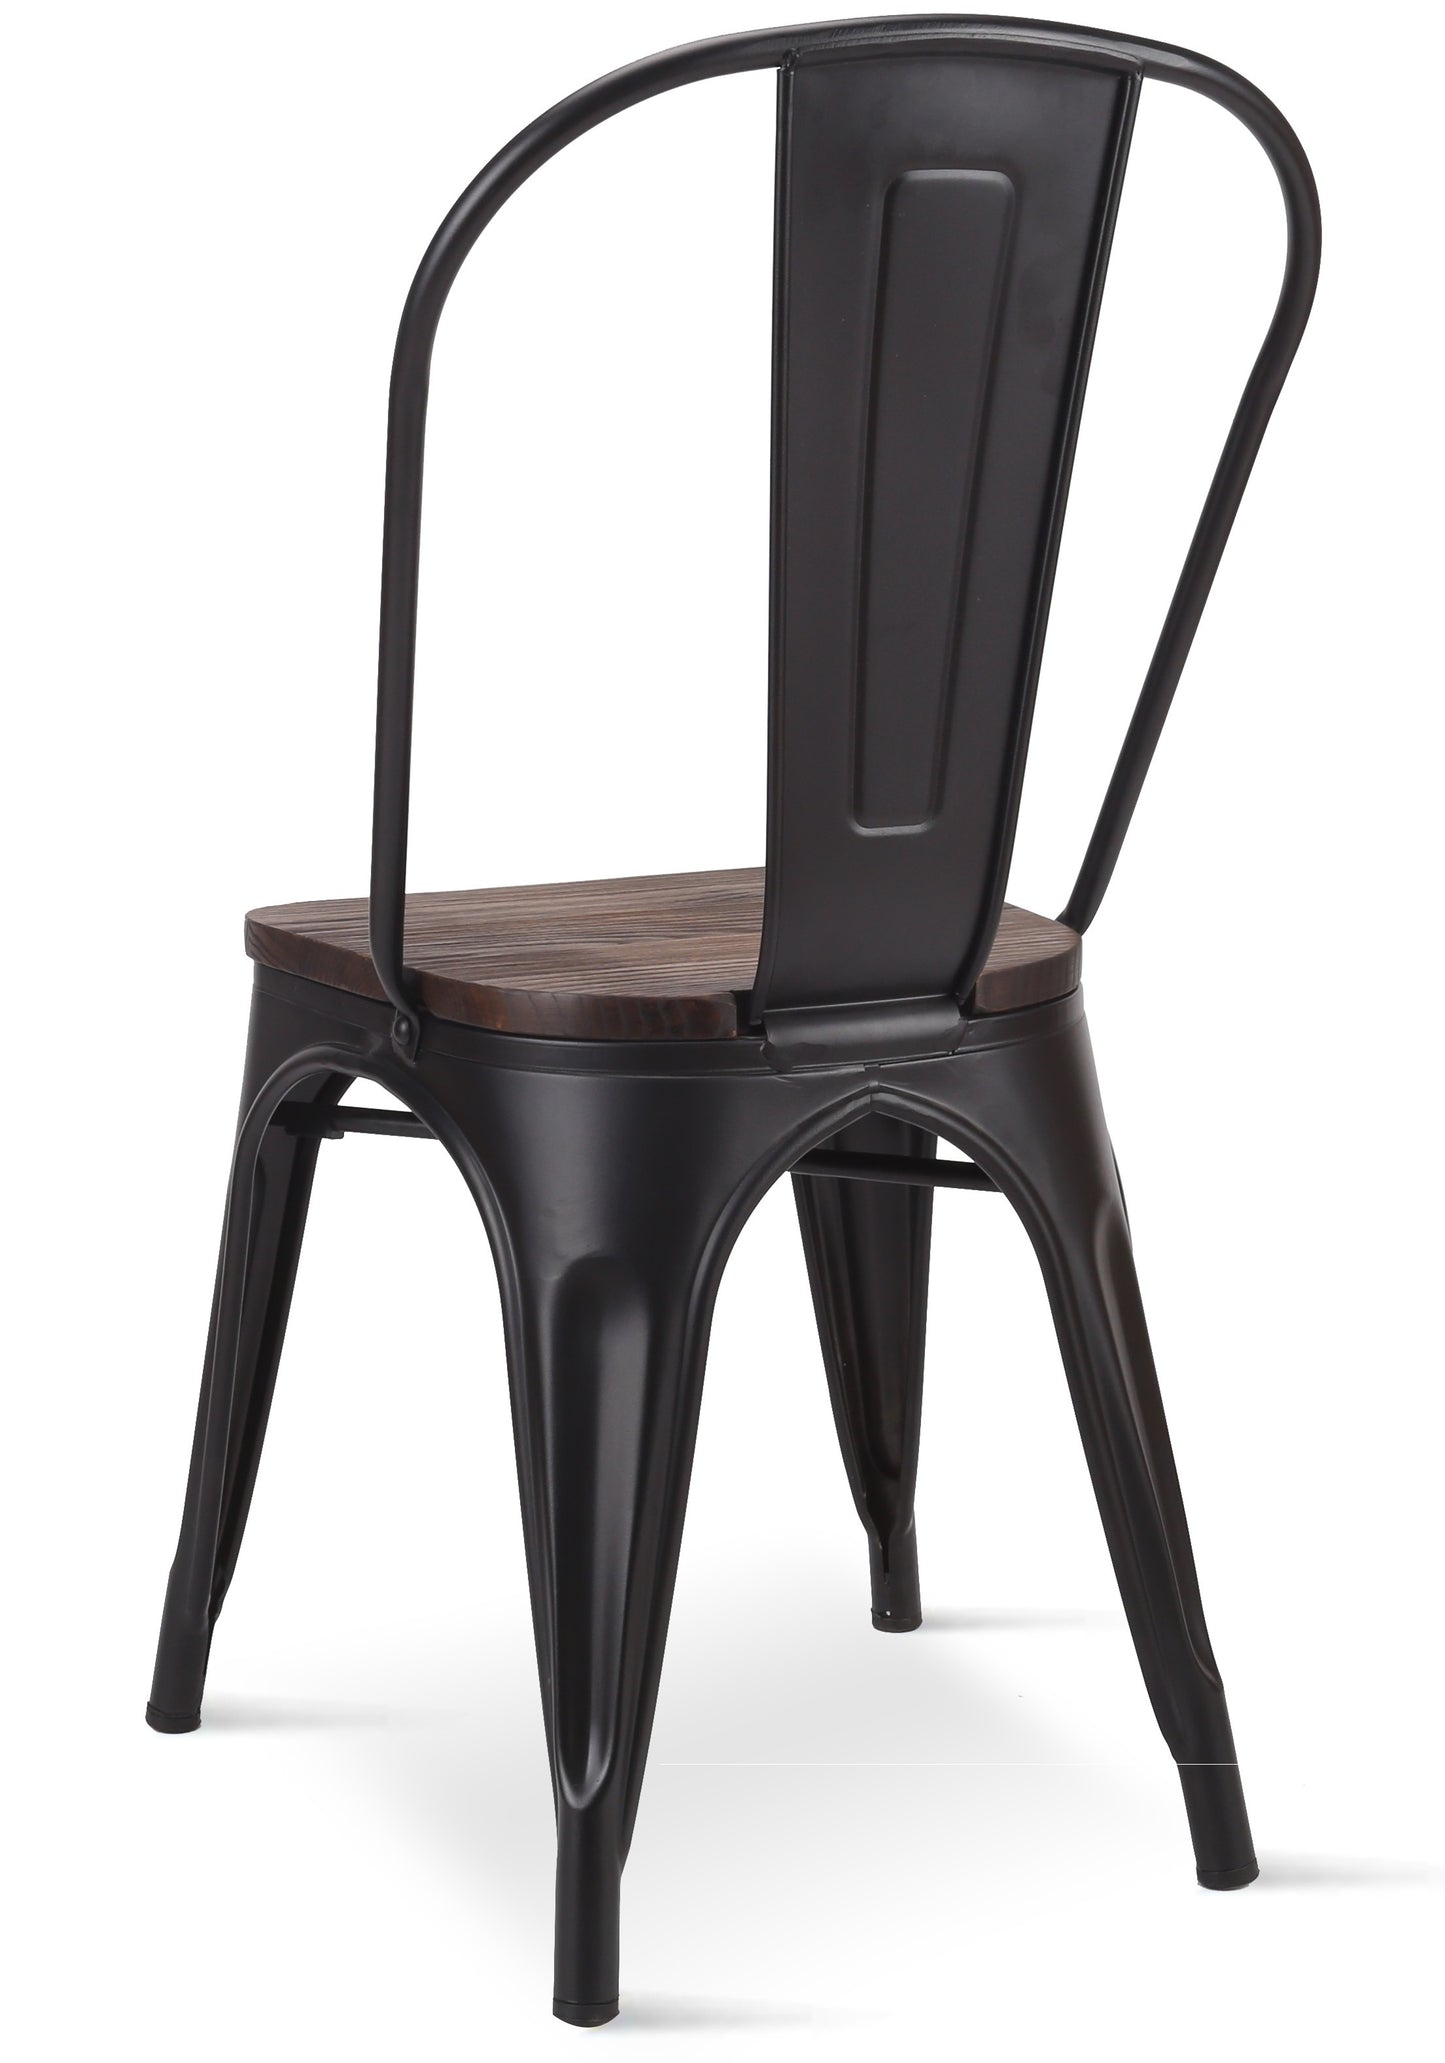 Chaise en métal noir mat avec assise en bois foncé - Style industriel